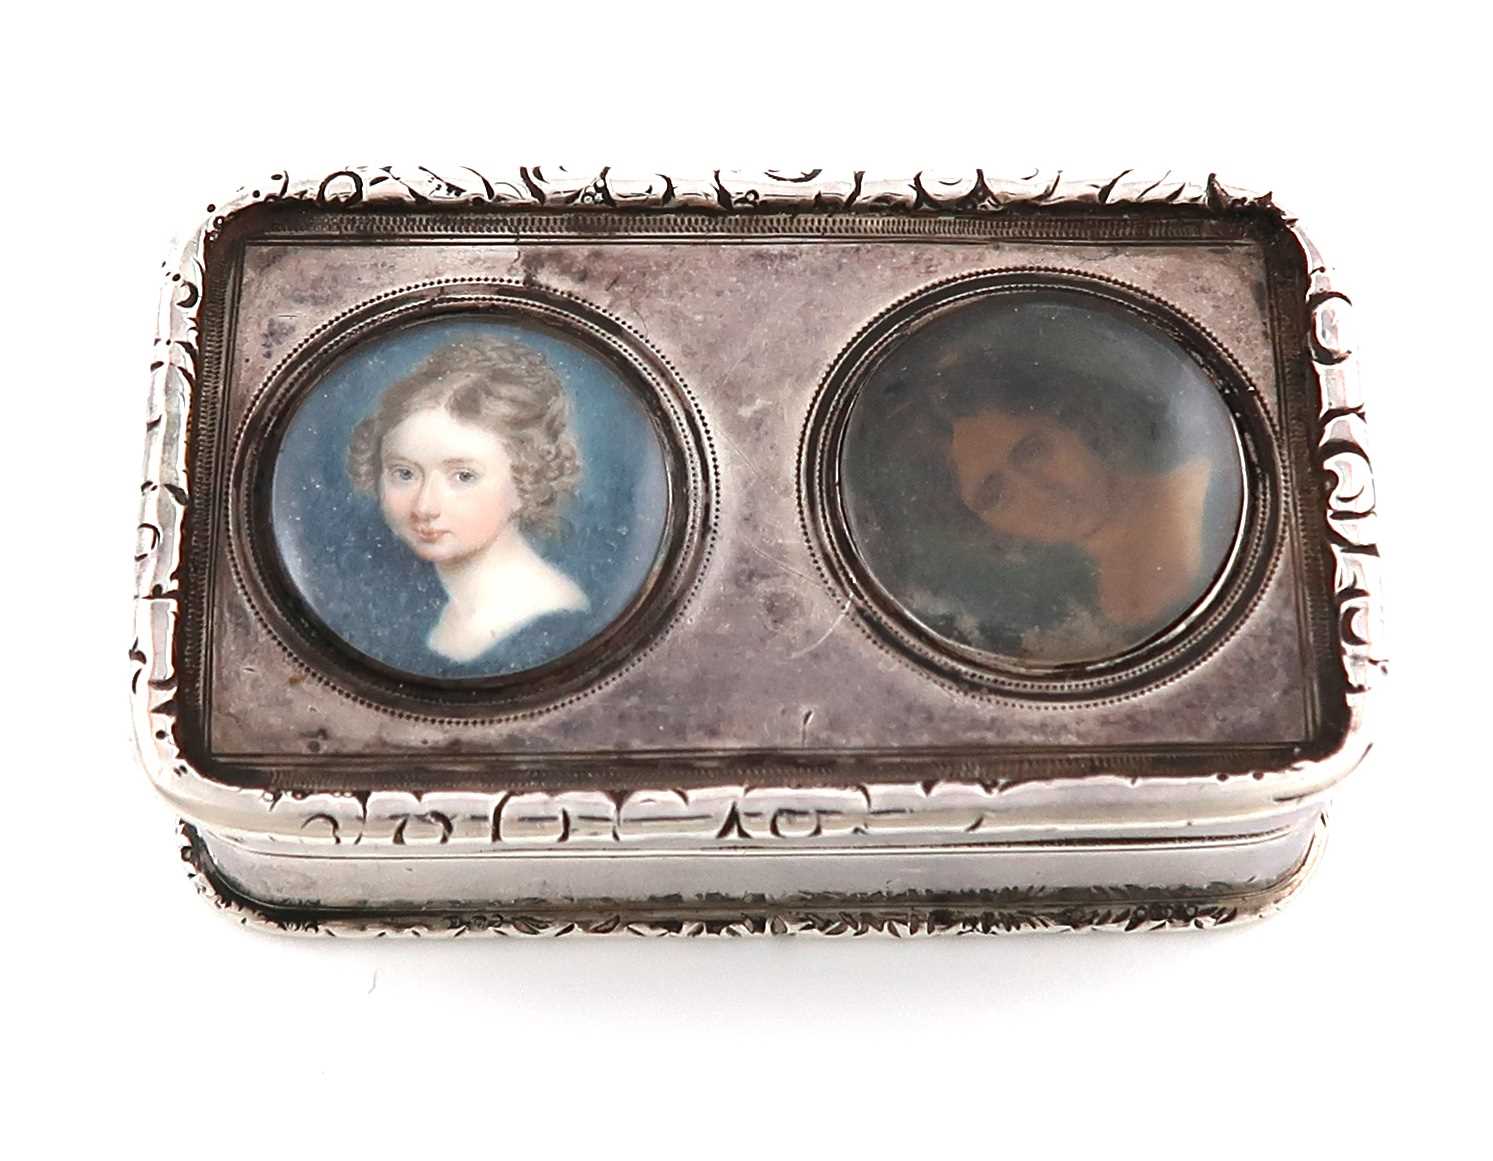 λ λA George IV silver snuff box with two portraits,by William Ellerby, London 1823,rectangular form,